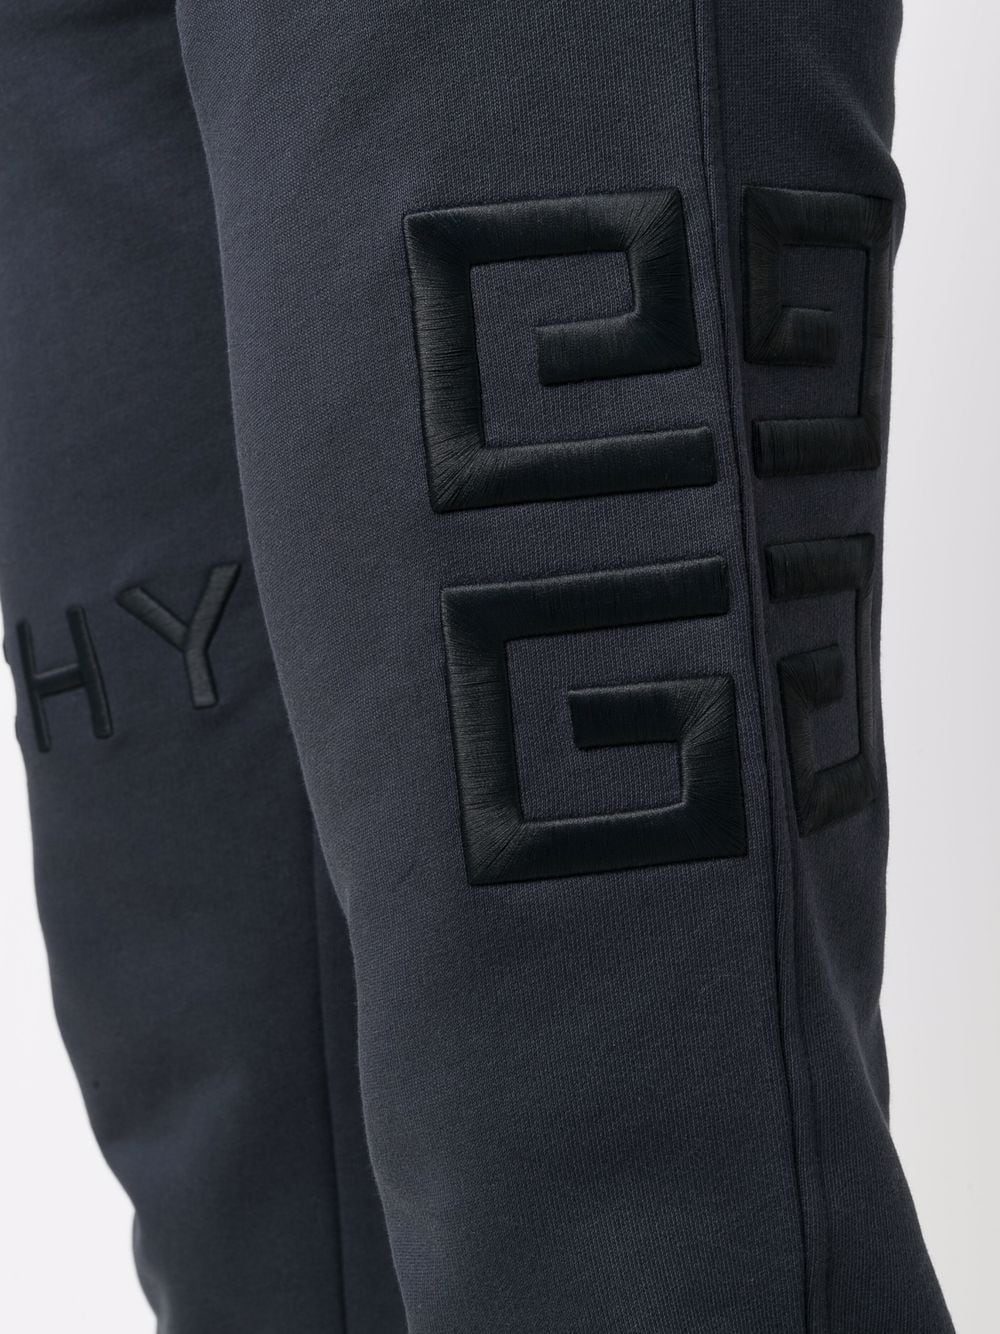 фото Givenchy спортивные брюки с вышивкой